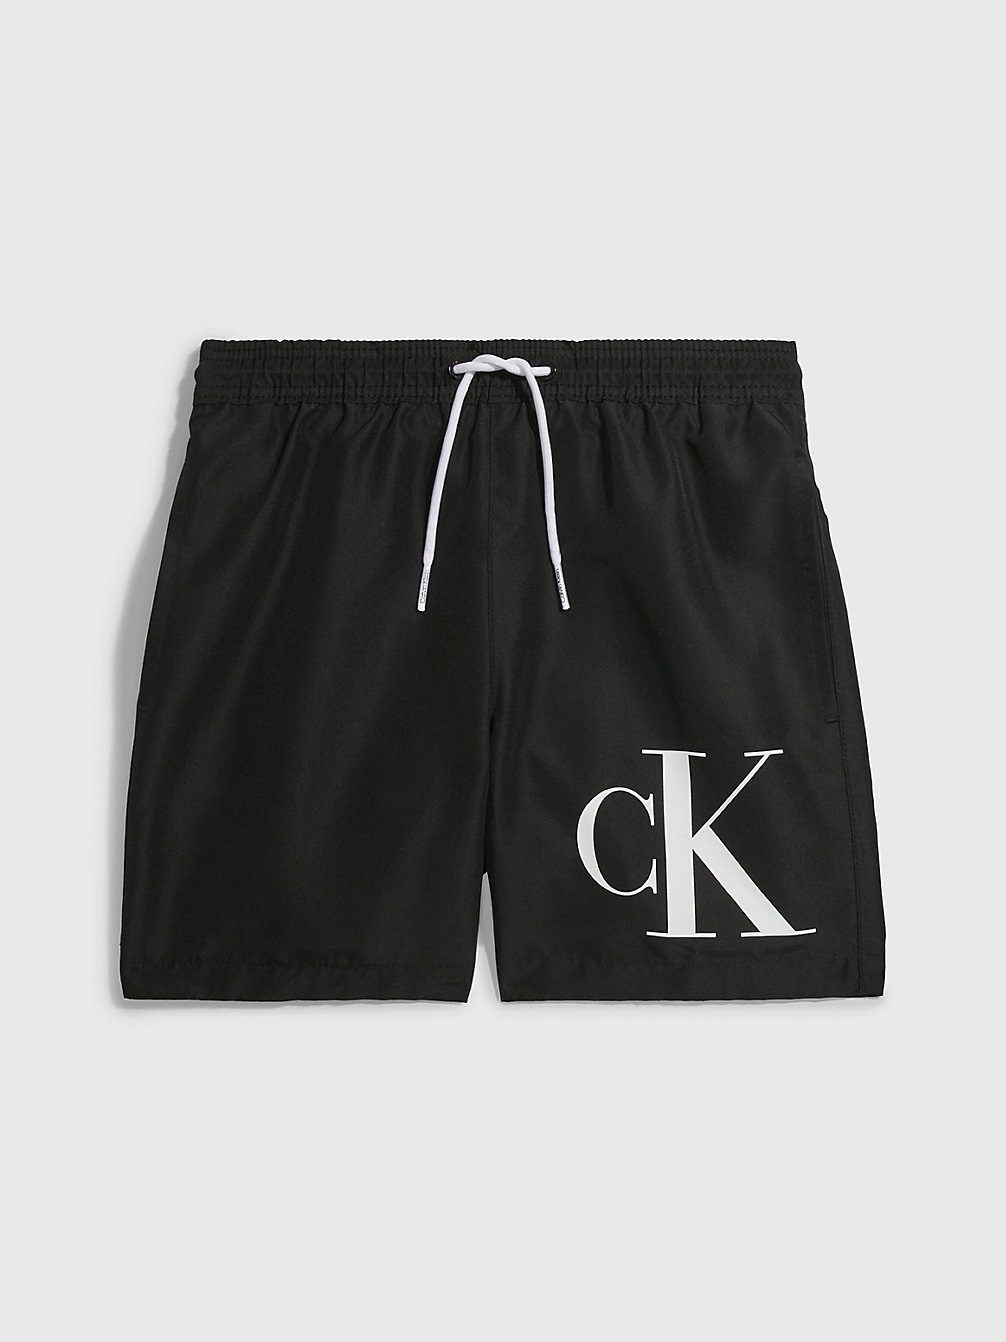 PVH BLACK Badeshorts Für Jungen - CK Monogram undefined Jungen Calvin Klein